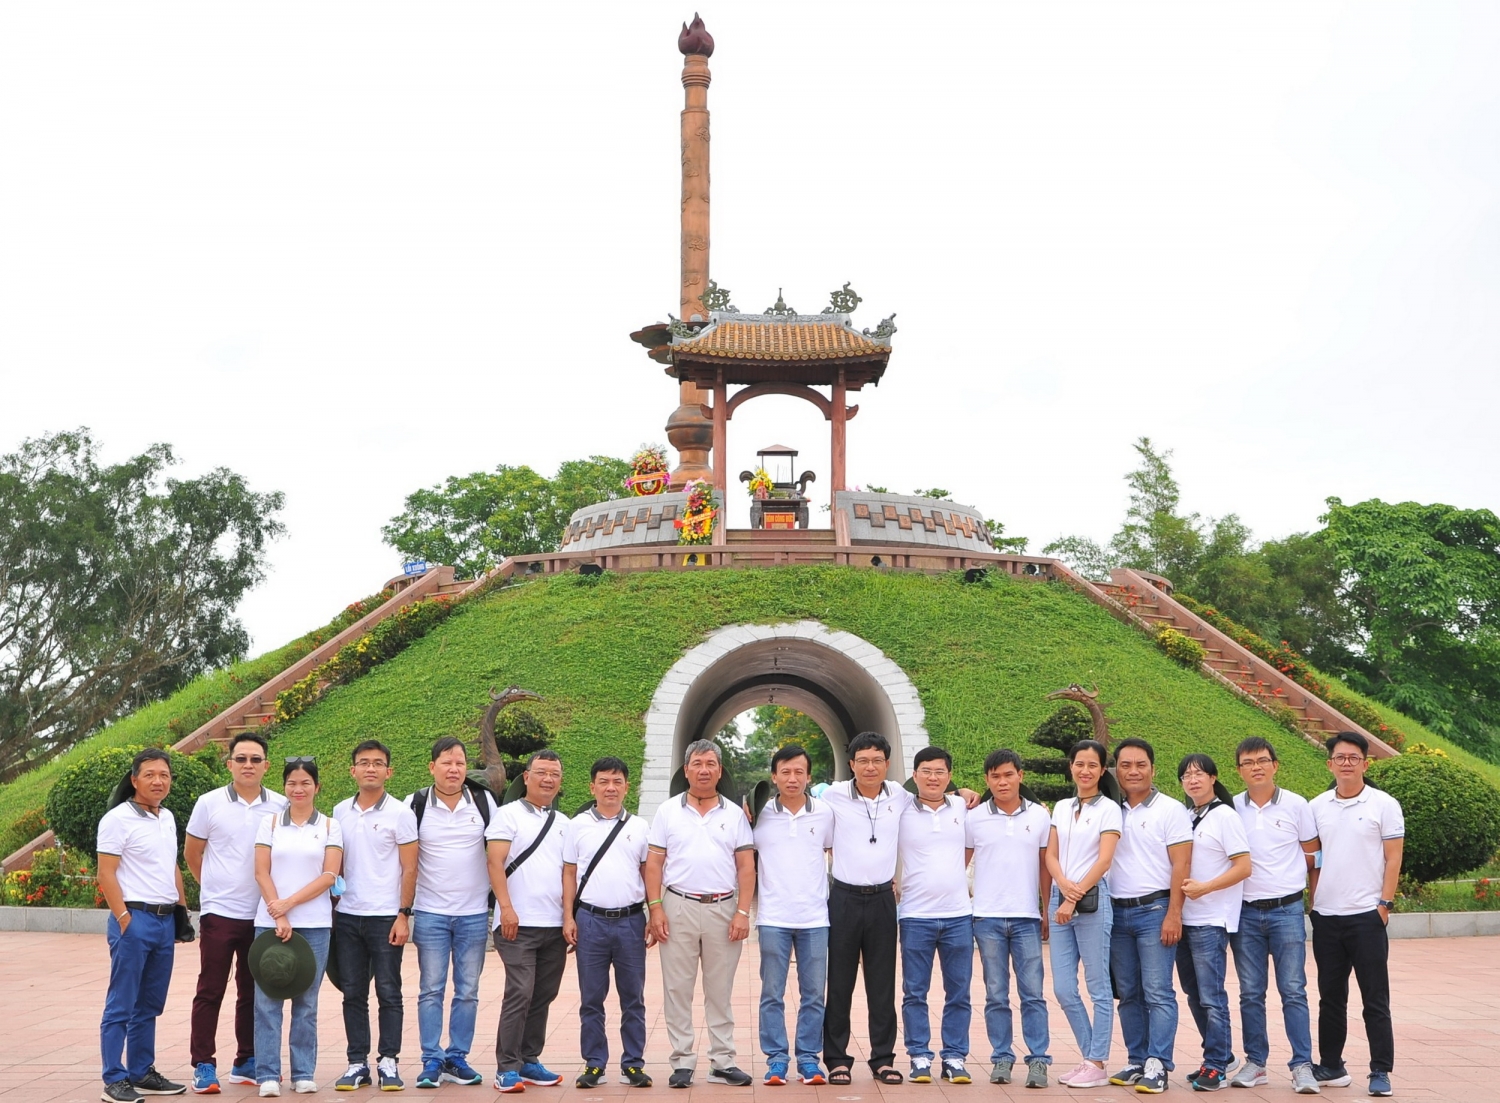 Chi bộ NCSP viếng tượng đài ghi công tại Thành cổ Quảng Trị